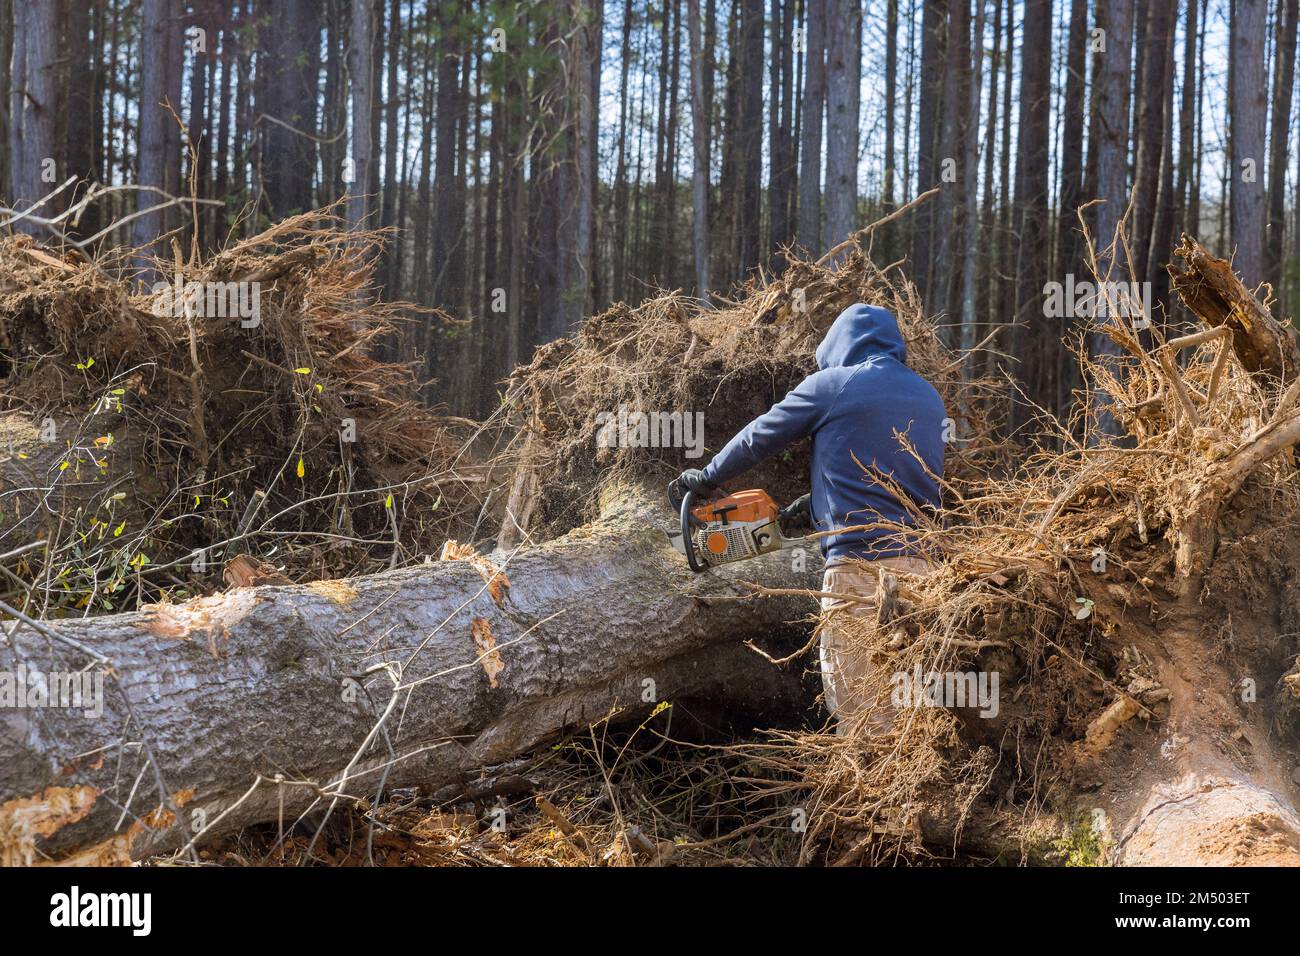 Couper les arbres à l'aide d'une tronçonneuse est un désastre écologique dévastateur, car les travailleurs détruisent la forêt. Banque D'Images